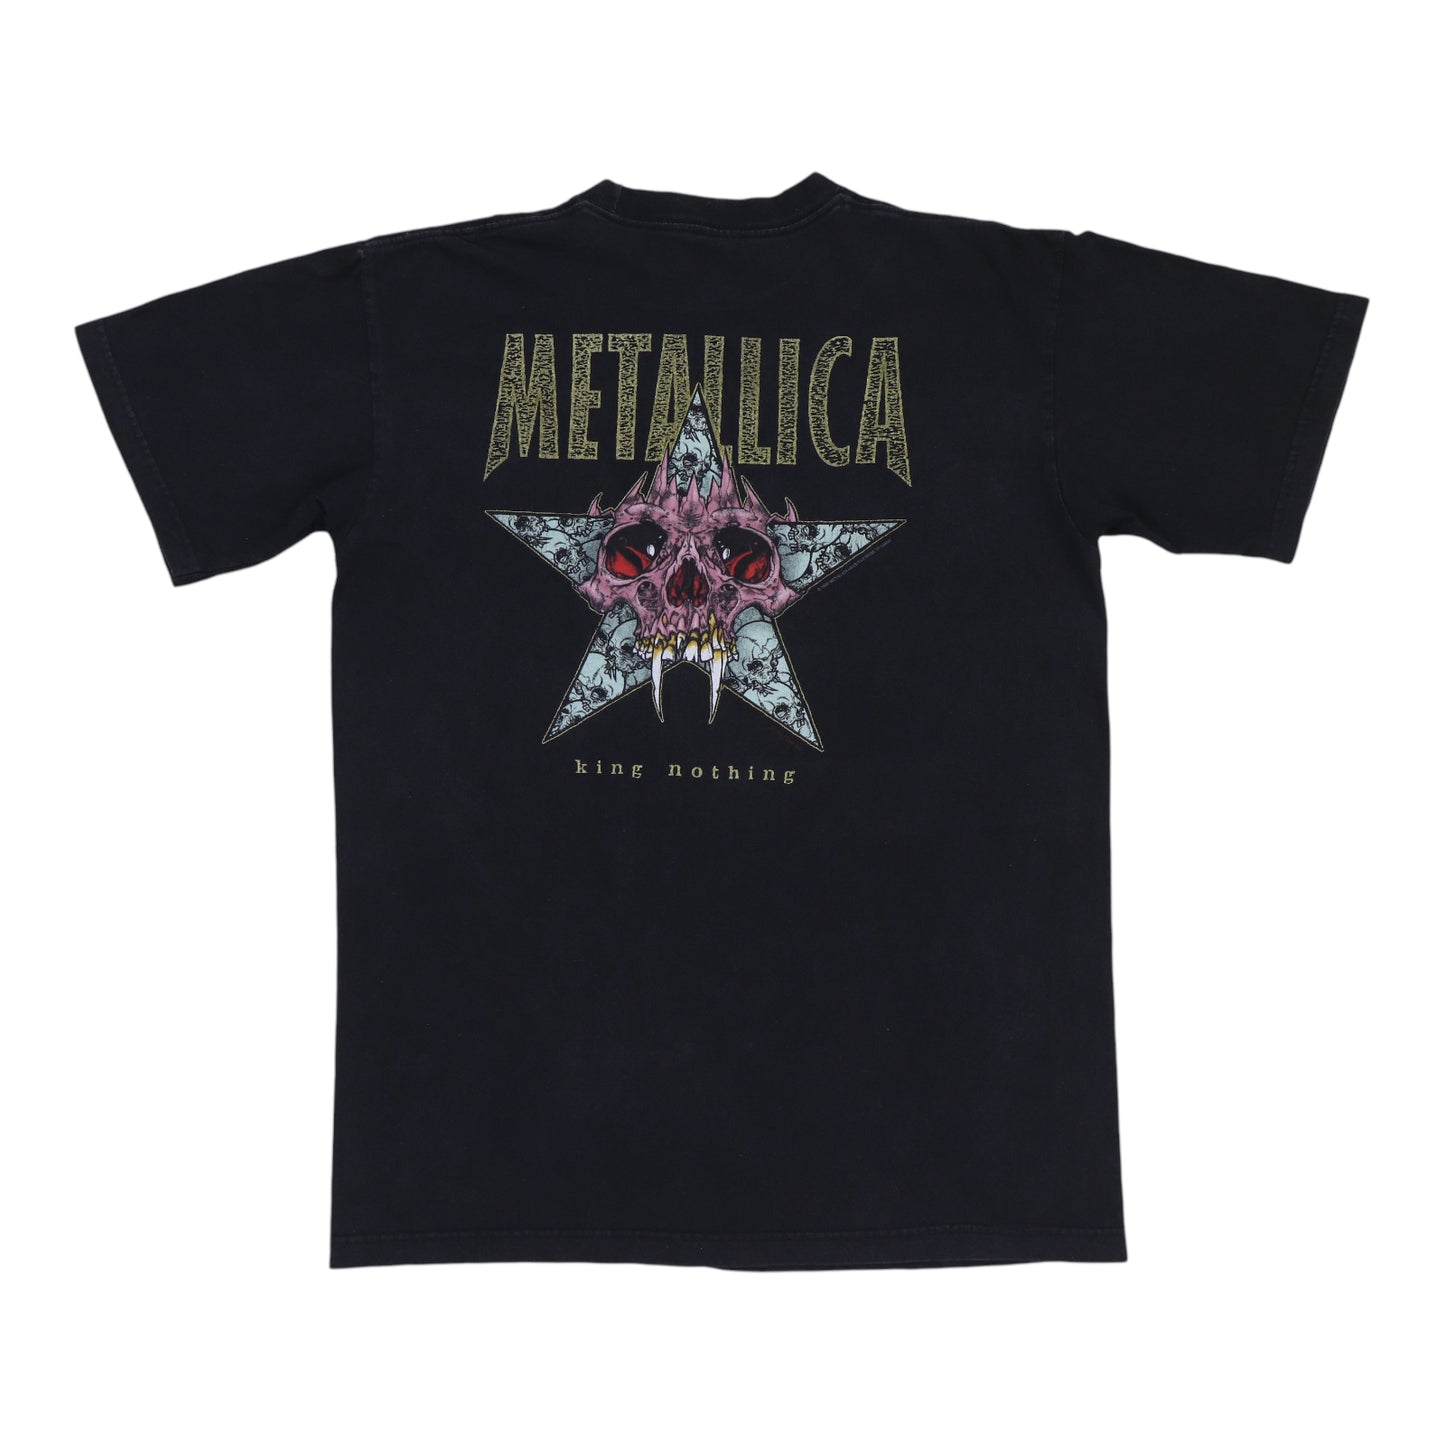 1996 Metallica Careful What You Wish Shirt